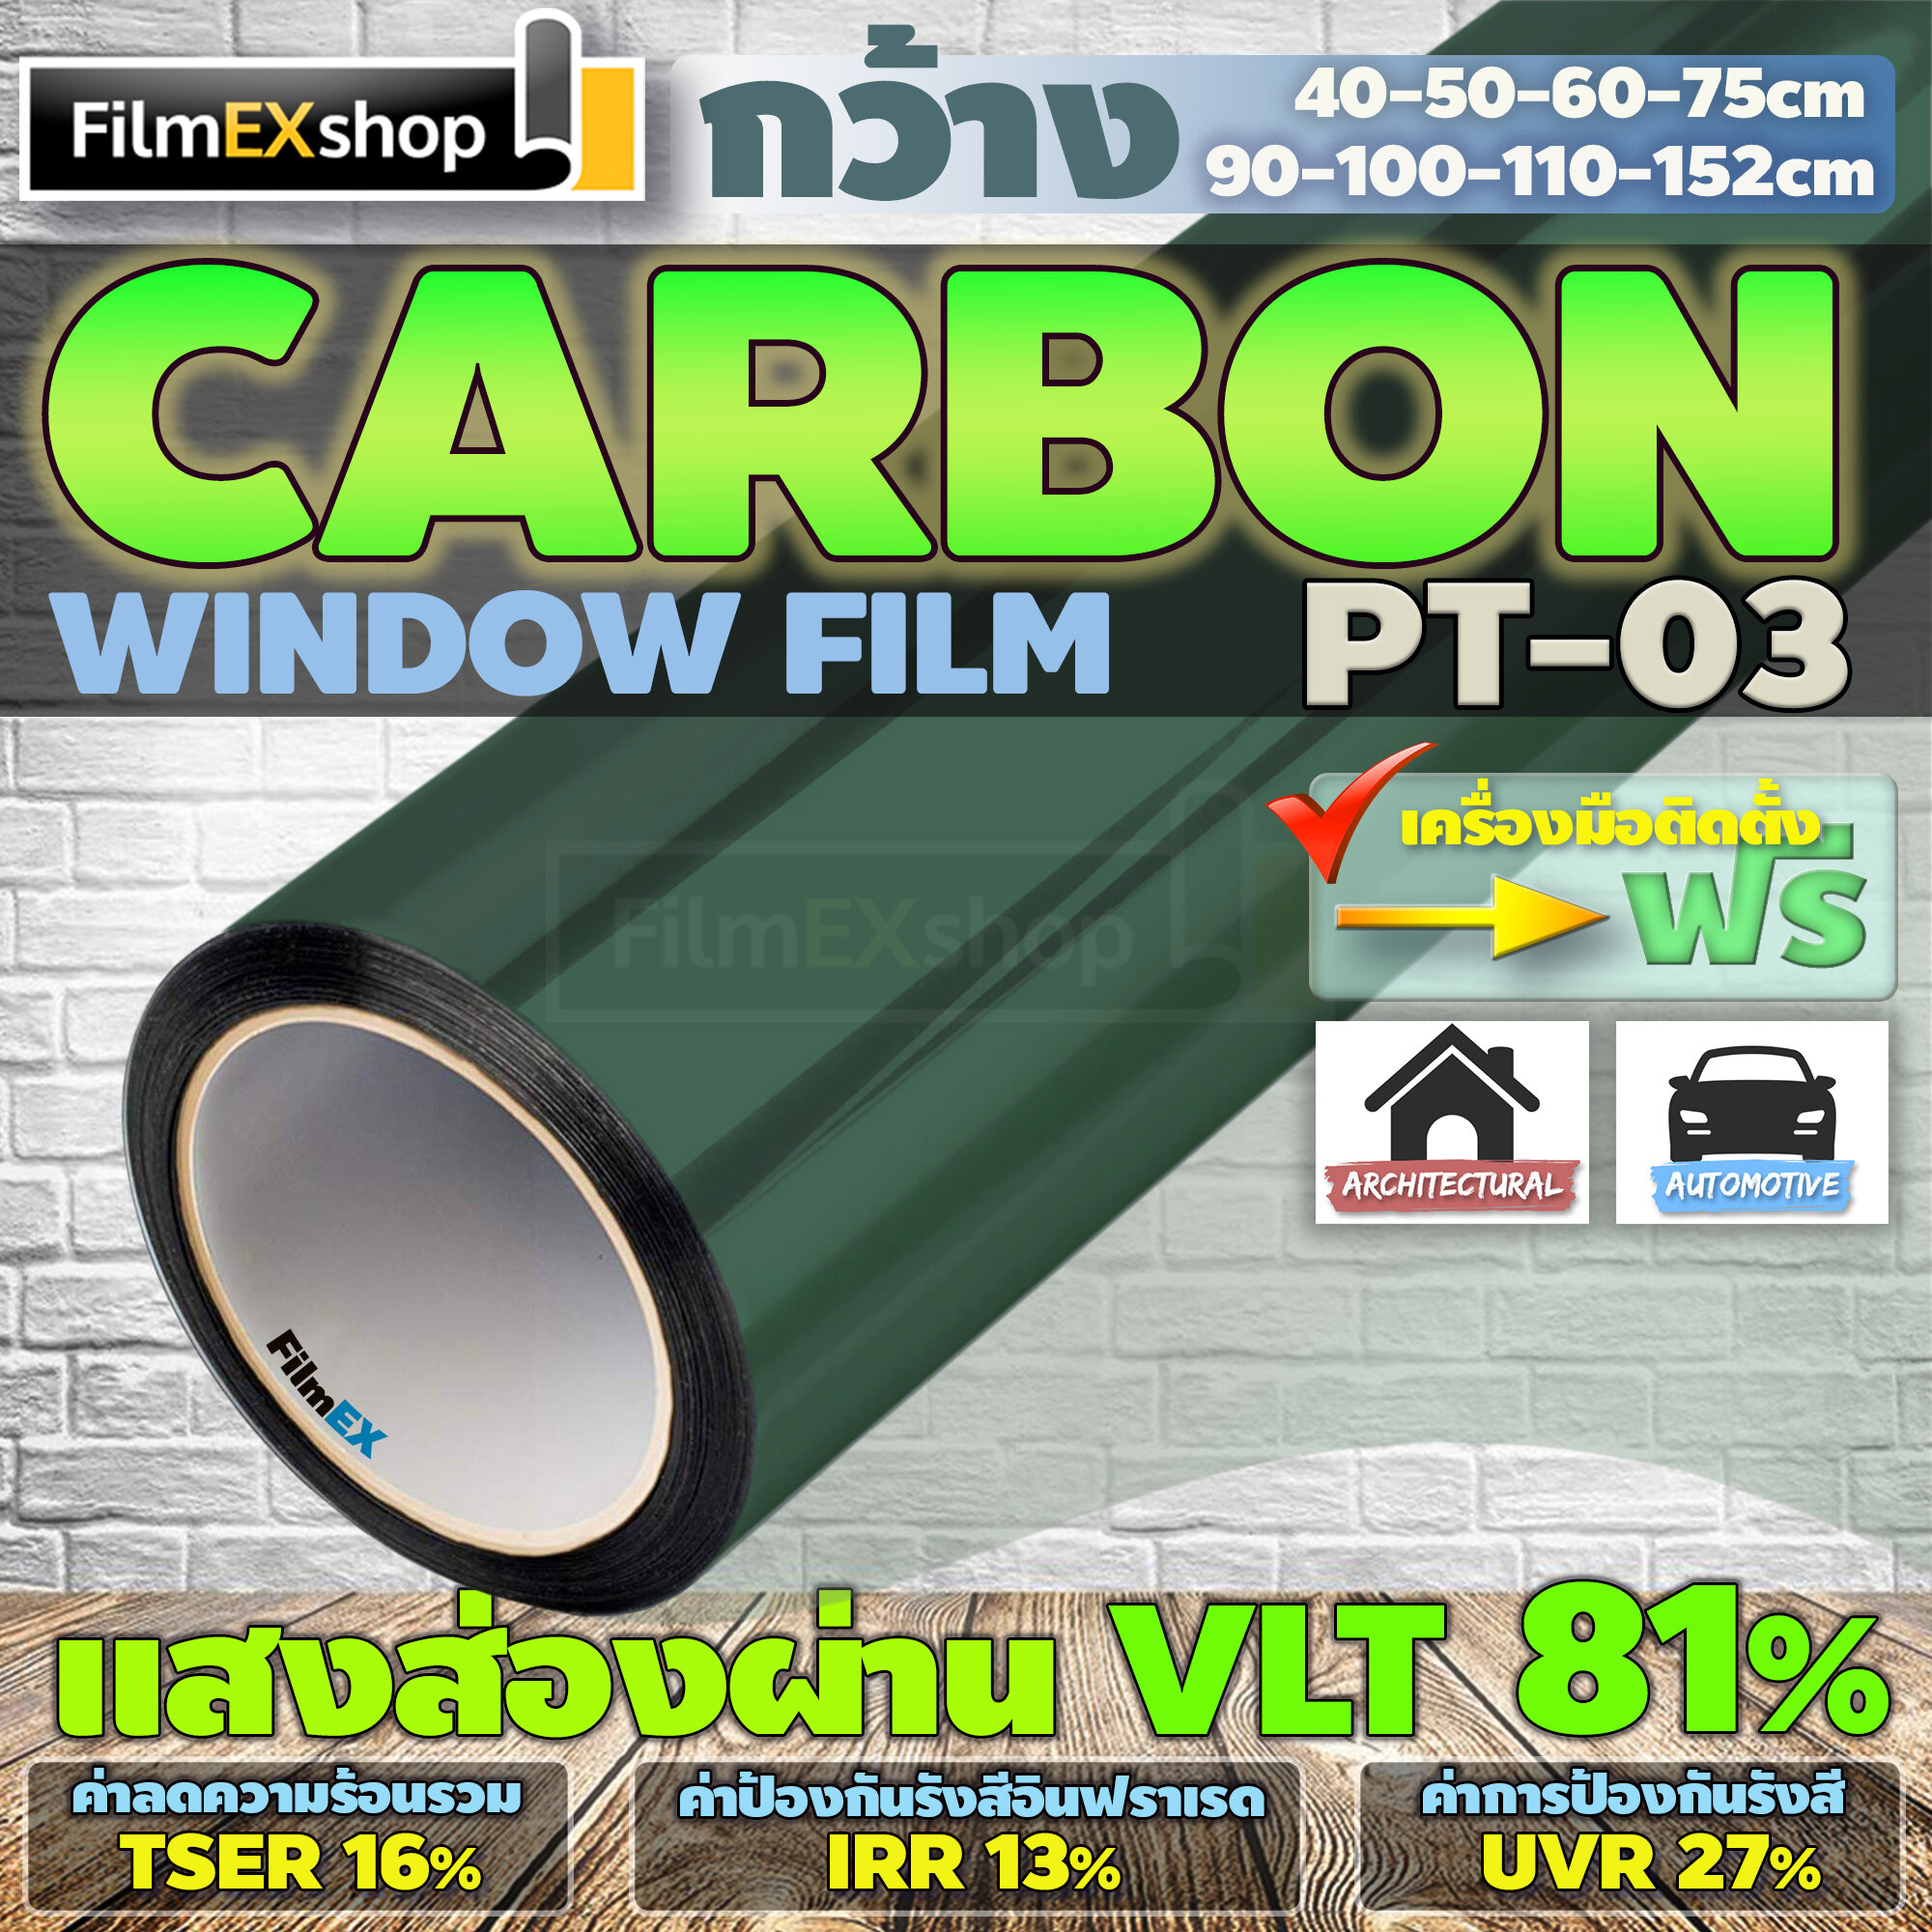 PT-03  VLT 81%  ฟิล์มคาร์บอน Carbon Window Film ฟิล์มกรองแสง ฟิล์มติดกระจก ฟิล์มกรองแสงรถยนต์ (ราคาต่อเมตร)